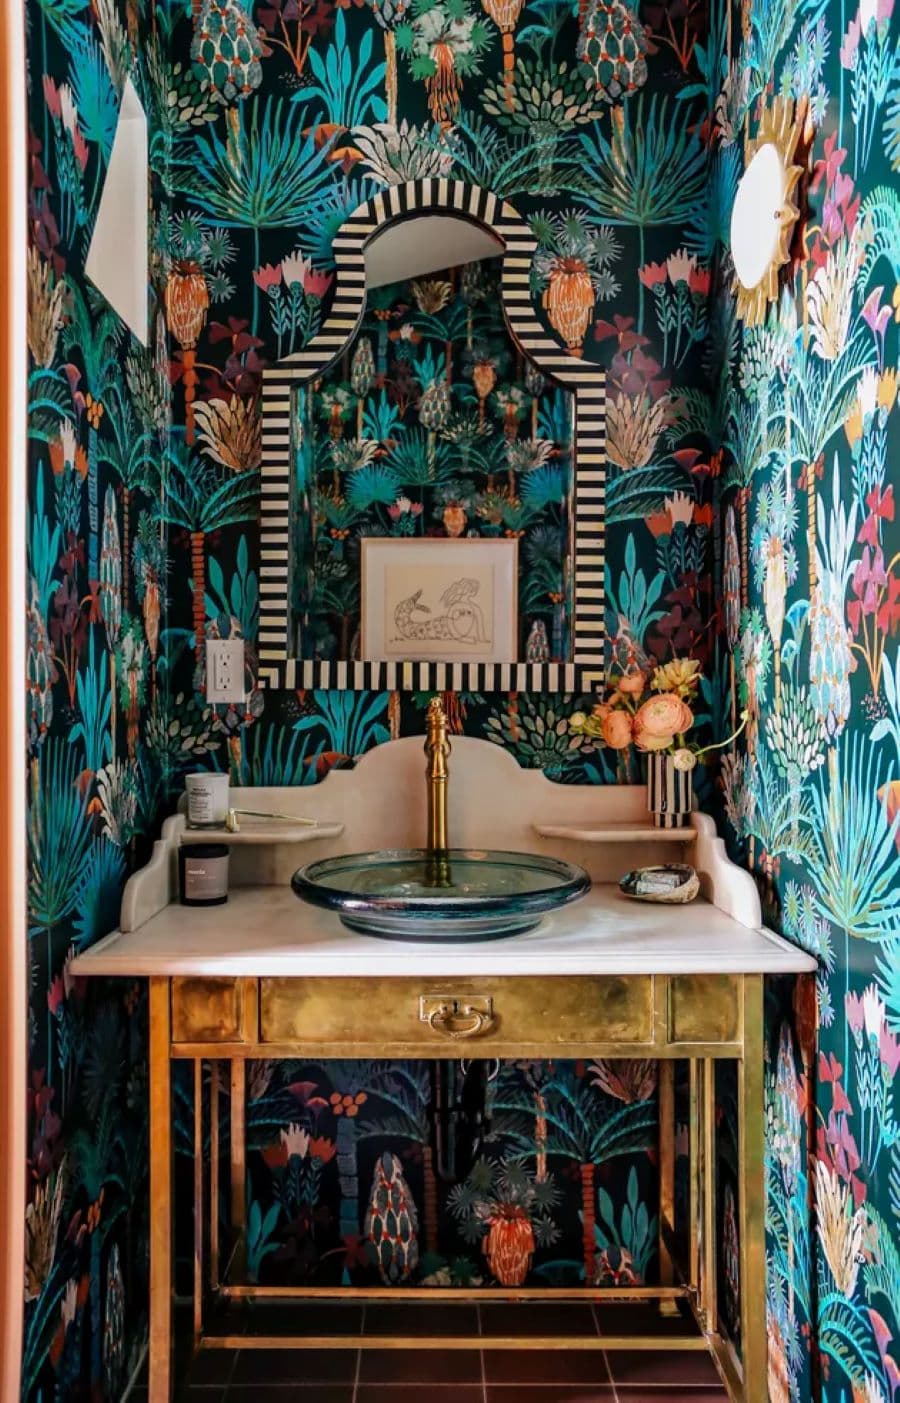 Baño de visita pequeño, con papel mural tropical oscuro instalado en todas las paredes. Vanitorio tipo mueble vintage con lavamanos de vidrio y grifería dorada. Espejo con marco con líneas blancas y negras.